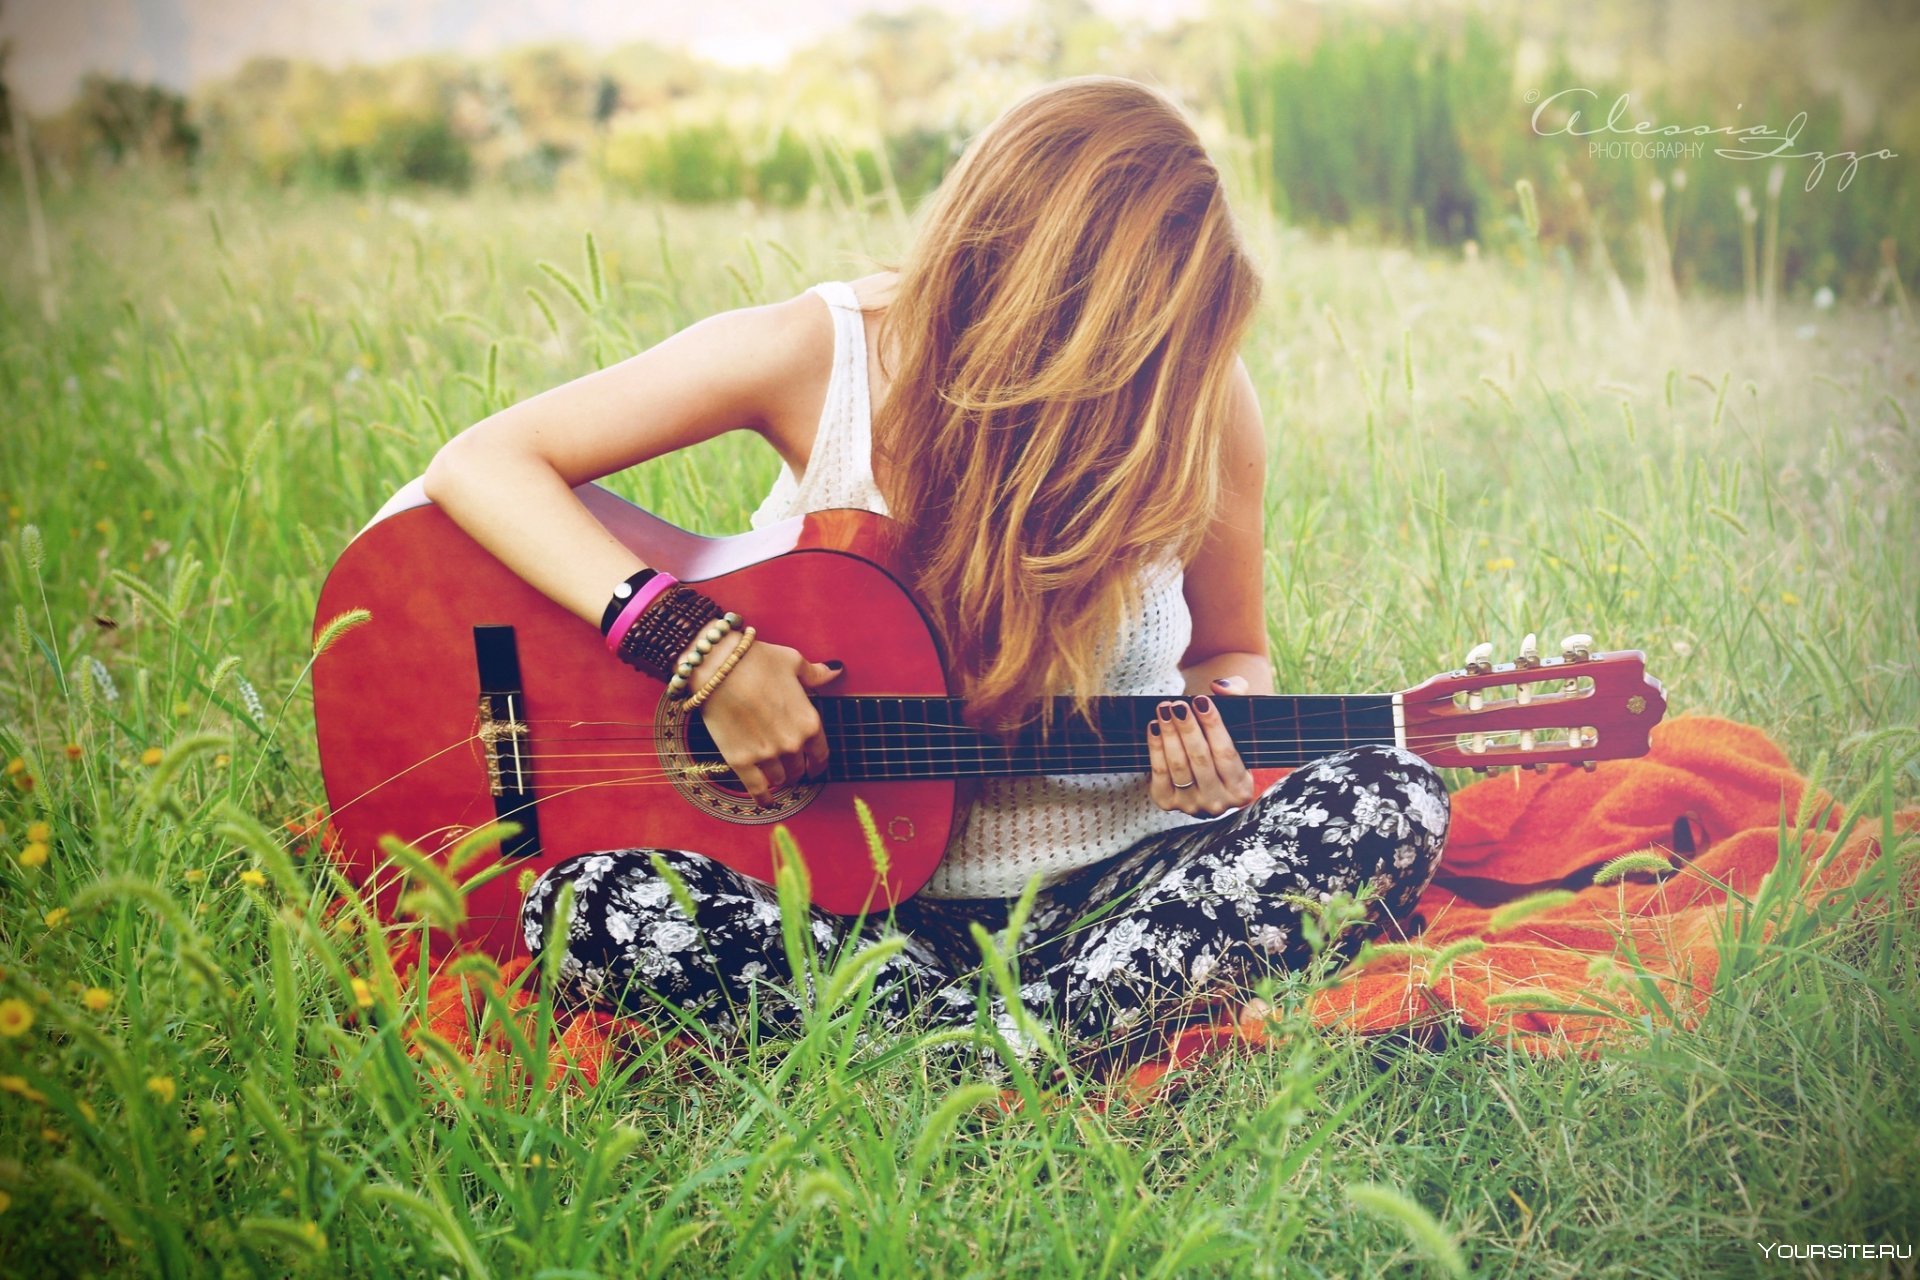 Слушать песню на лету. Девушка с гитарой. Красивая девушка с электрогитарой. Девушка с гитарой на природе. Фотосессия с гитарой.